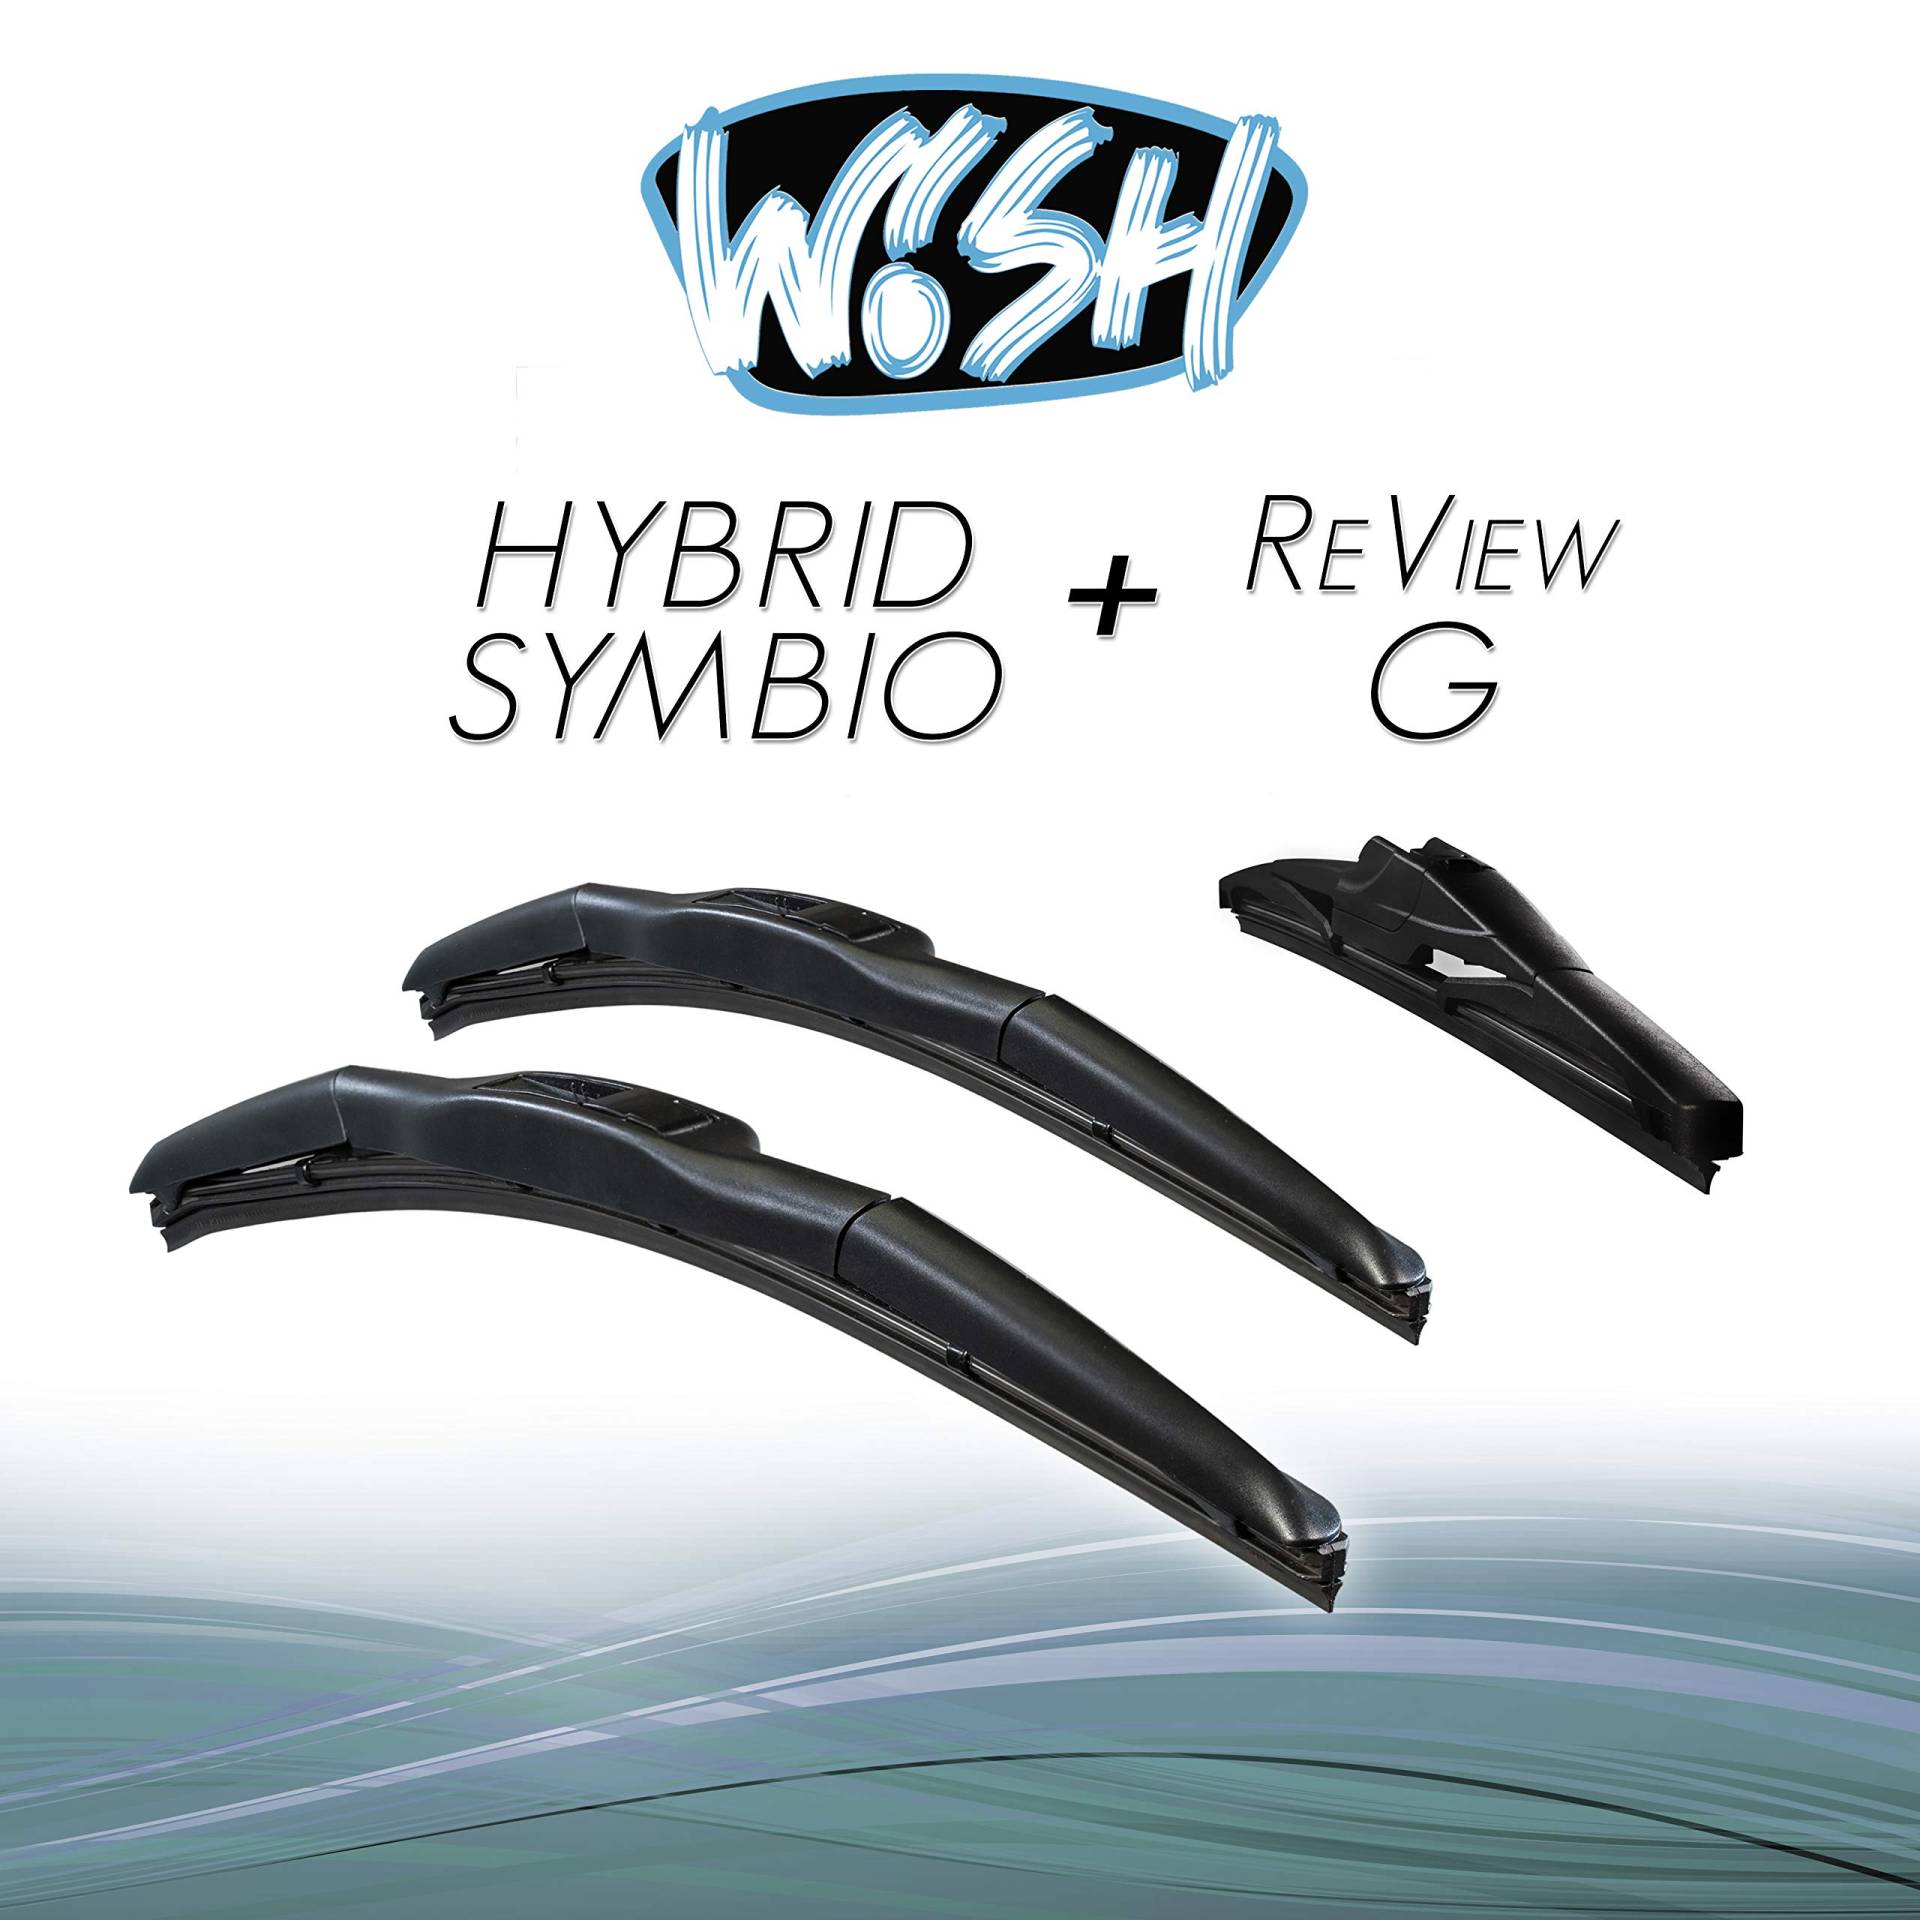 Wish® Hybrid Symbio Satz Front + Heck Scheibenwischer Länge: 26" 650mm / 18" 450mm / 9" 230mm Wischblätter Vorne und Hinten Hybrid-Scheibenwischer + Review G HS26.18.9RG von Wish